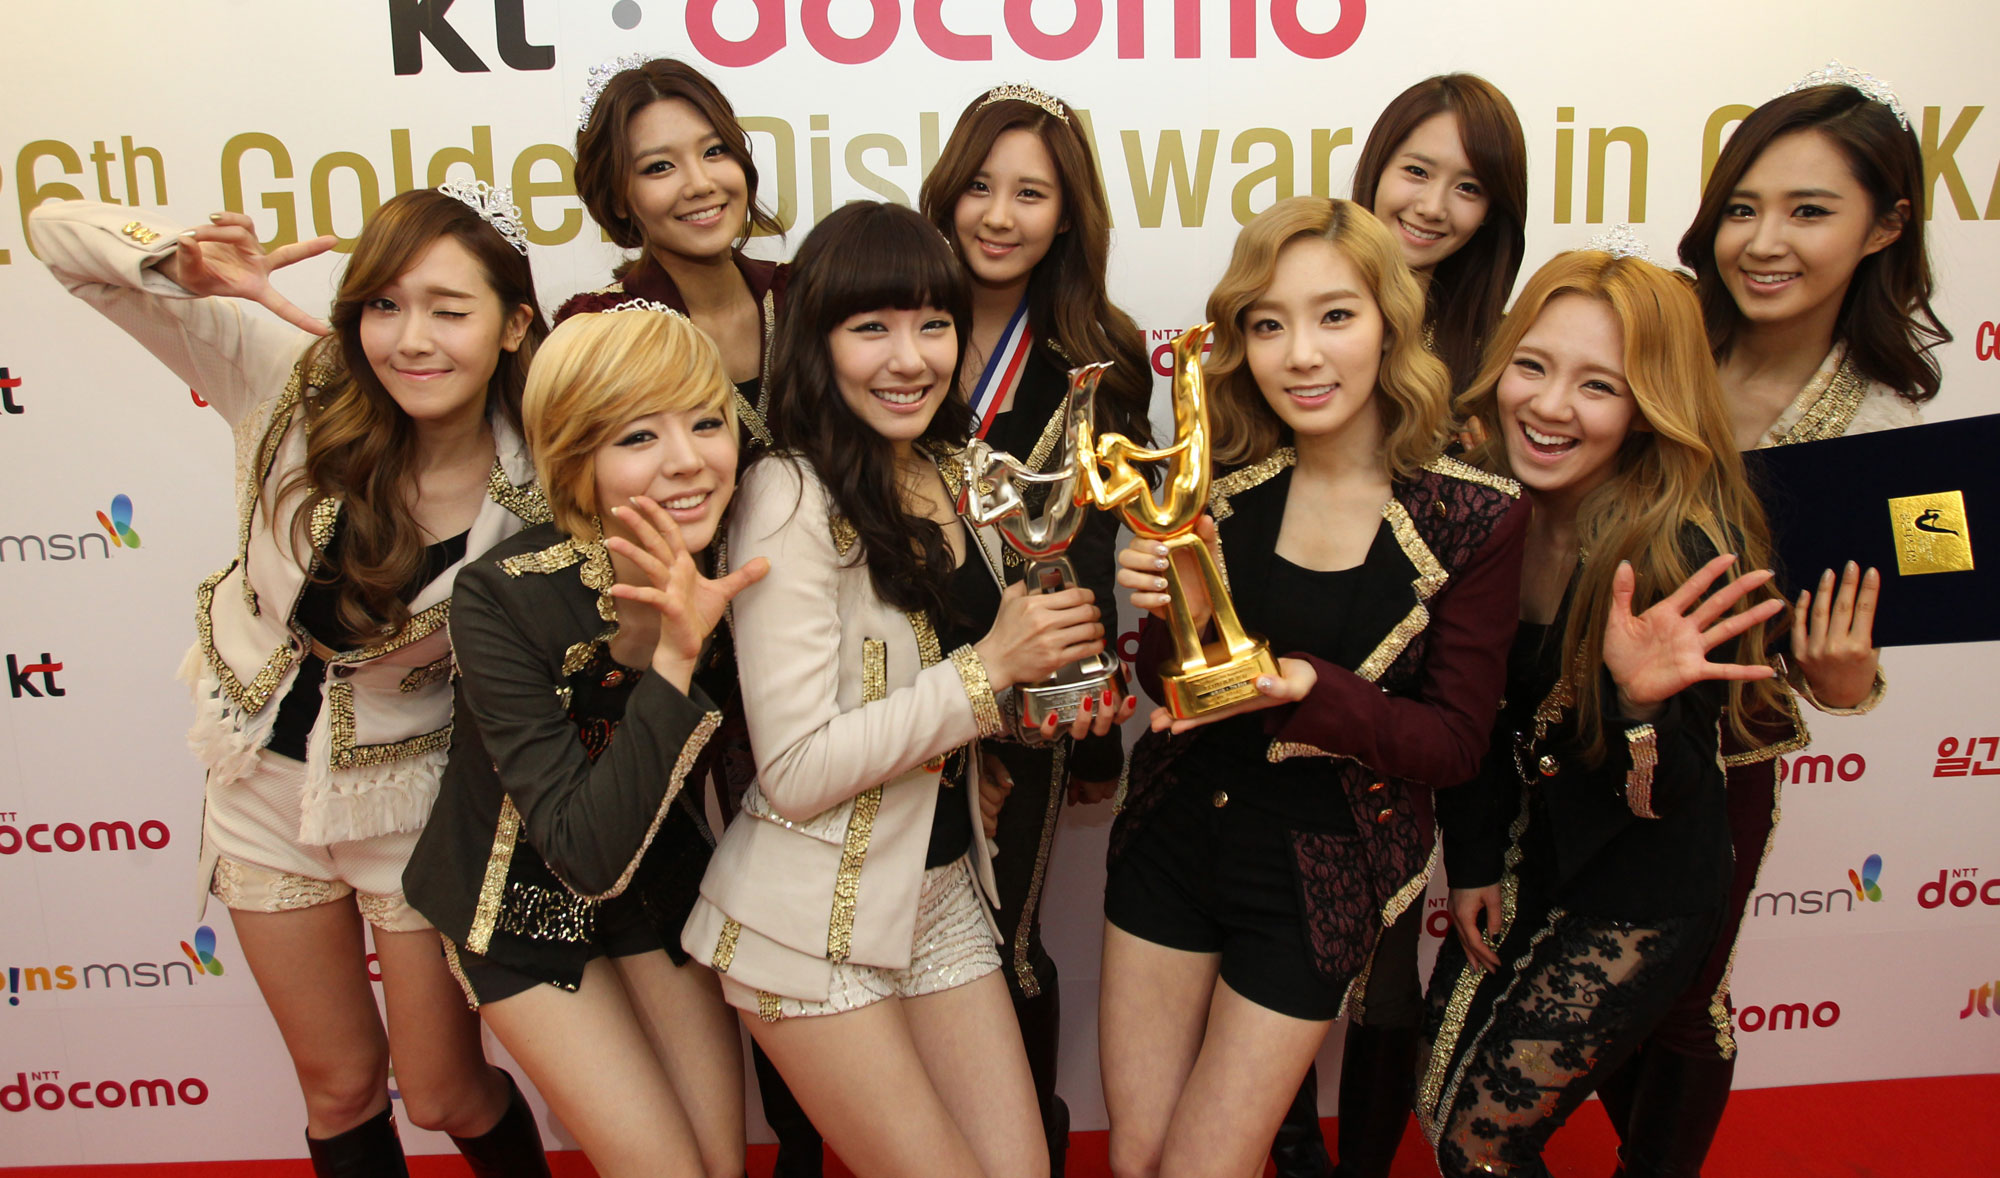 Golden Disk Awards in Osaka 2012